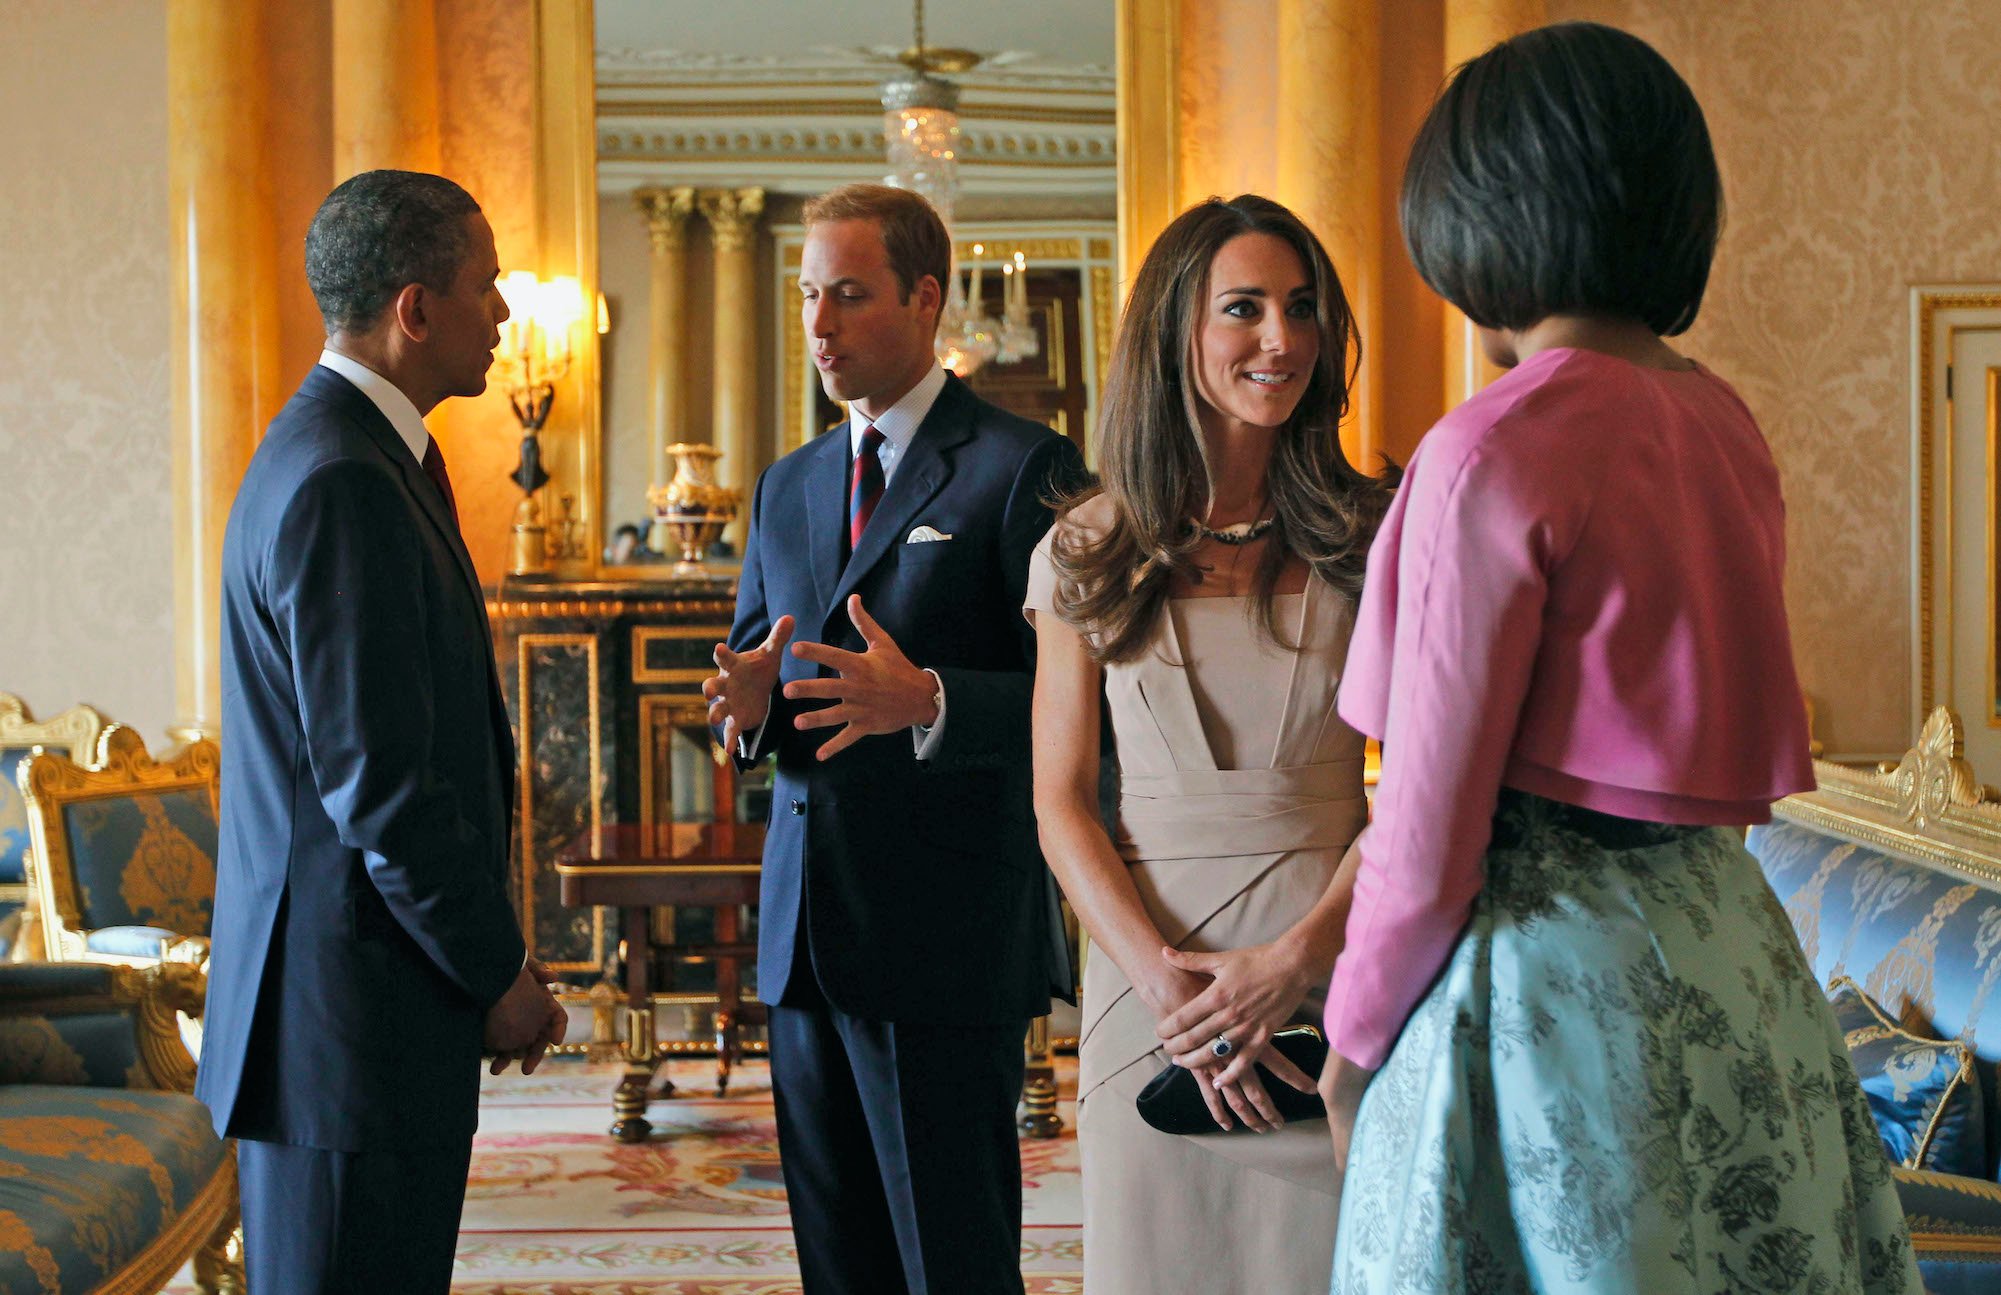 Barack Obama, Prince William, Kate Middleton, and Michelle Obama at Buckingham Palace